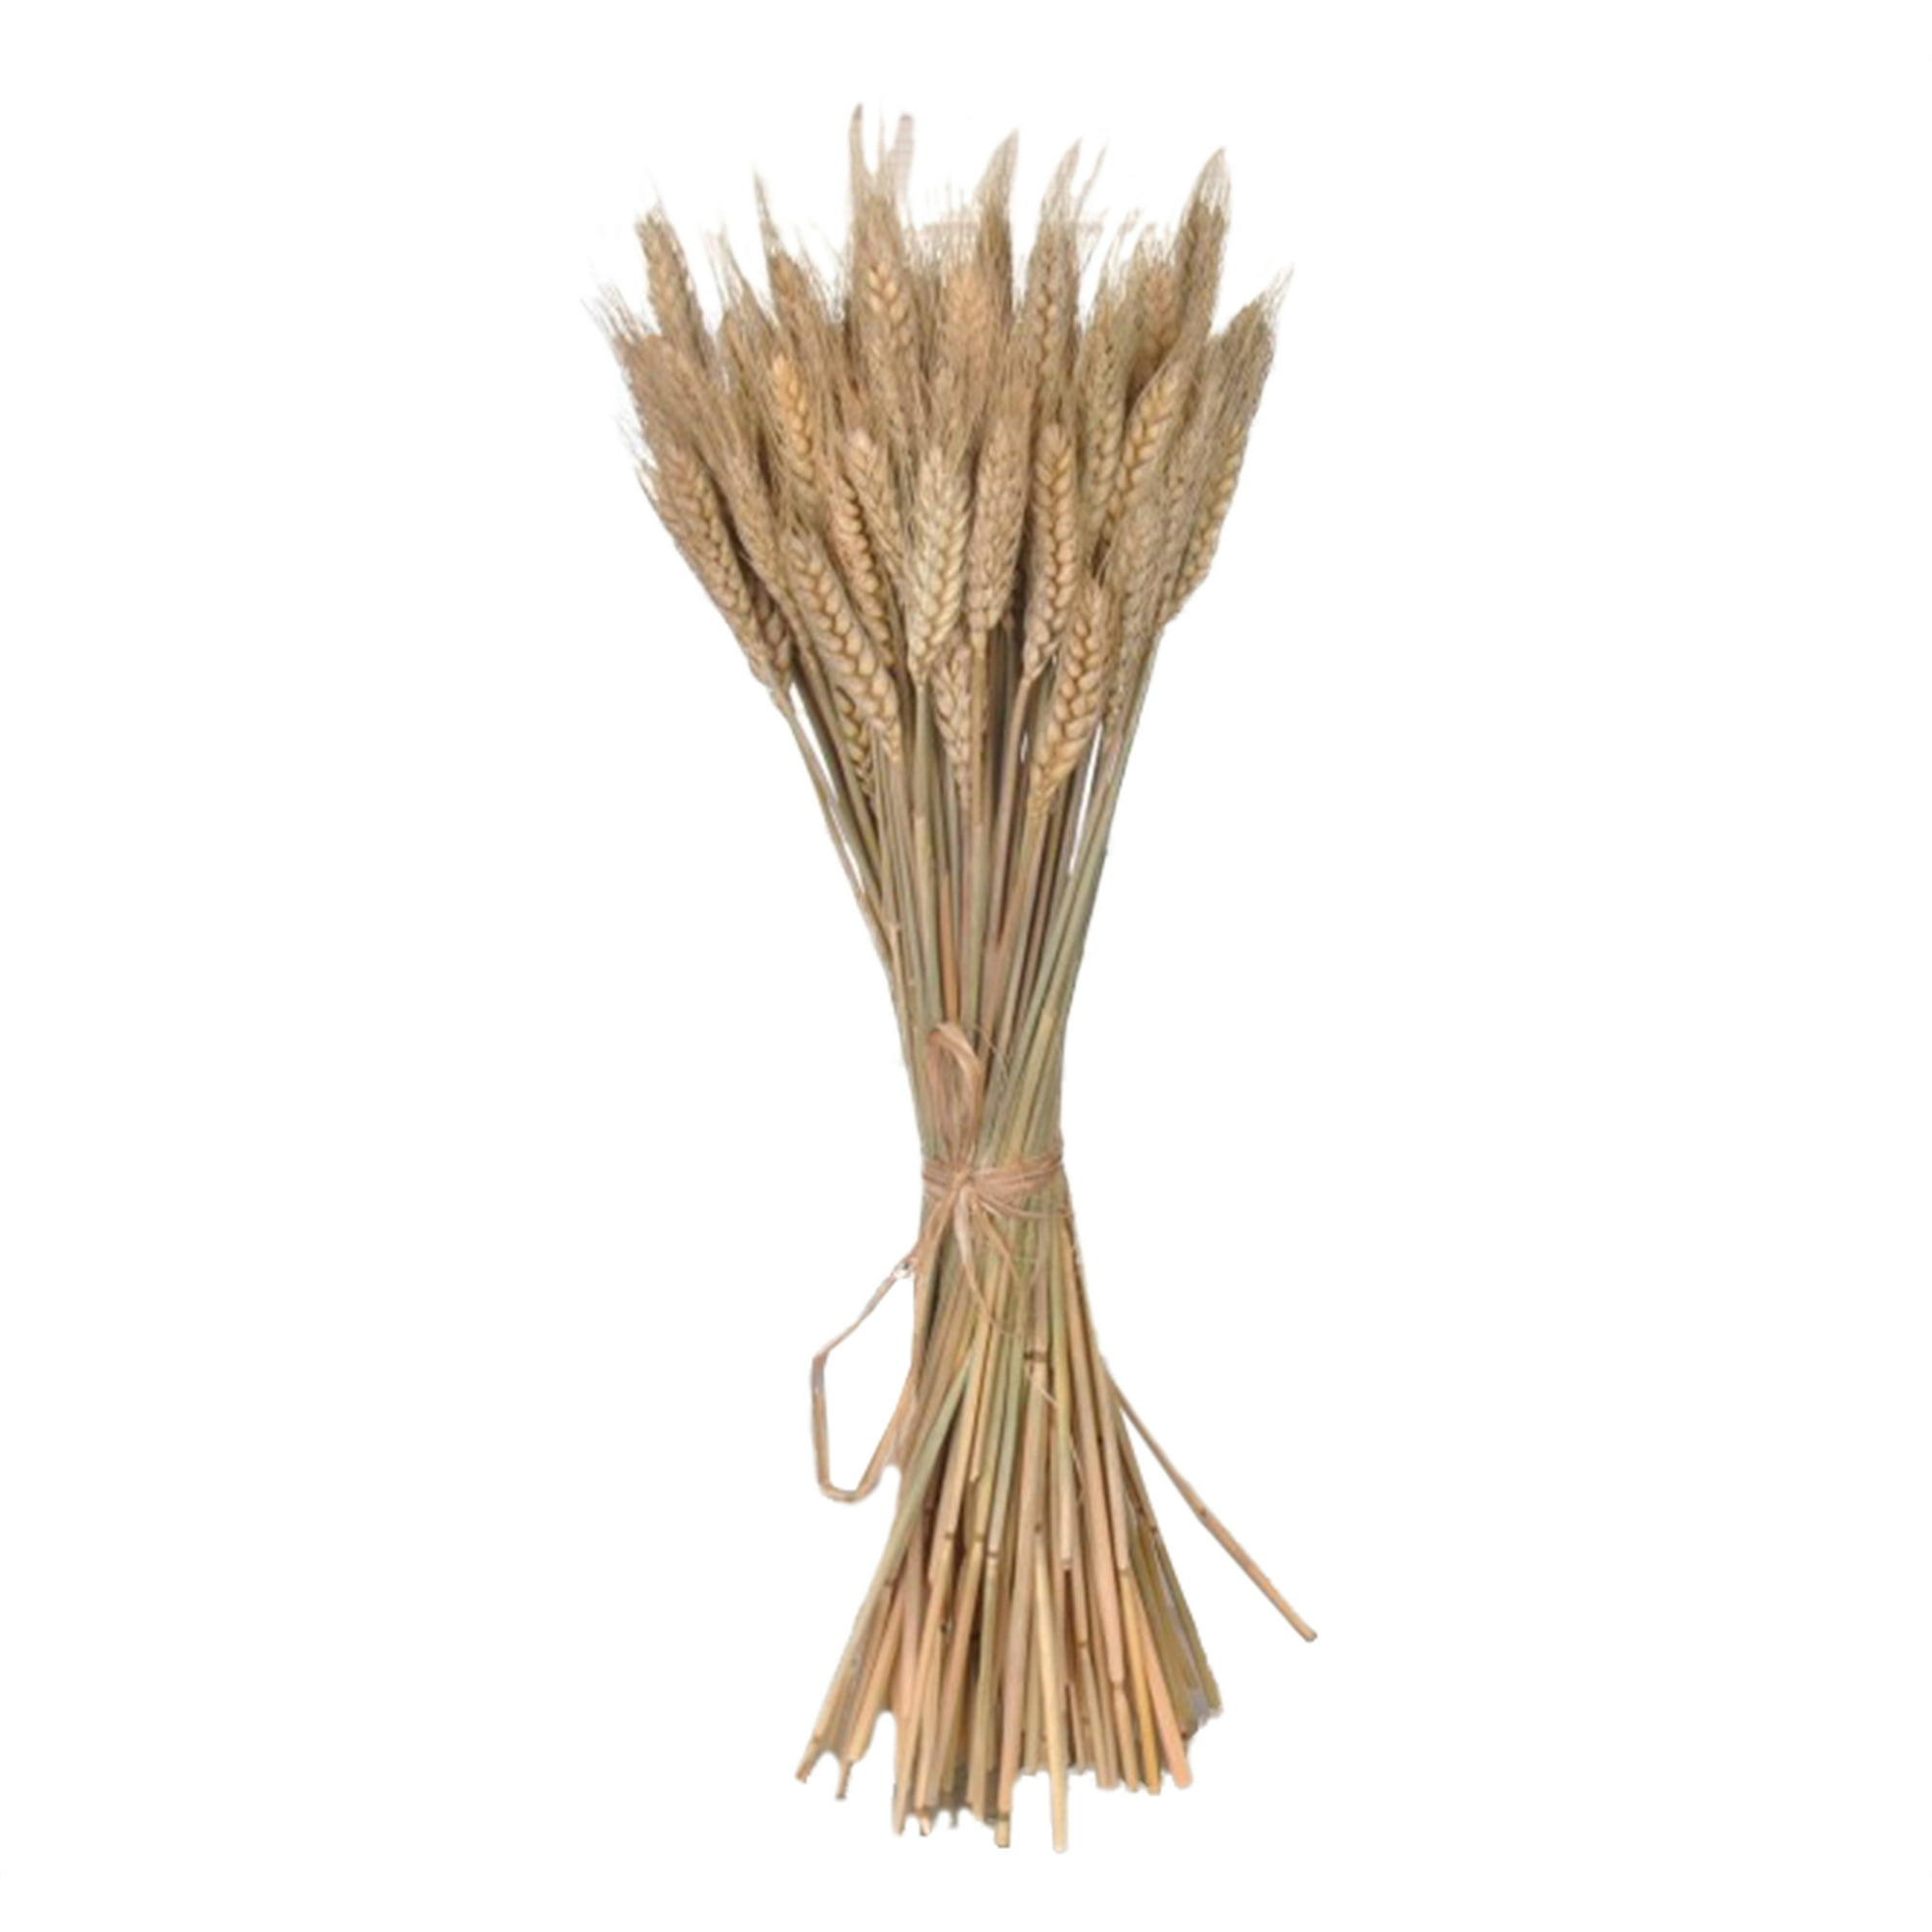 8 ideas de Decoración con espigas de trigo  espiga de trigo, decoración de  unas, flores secas